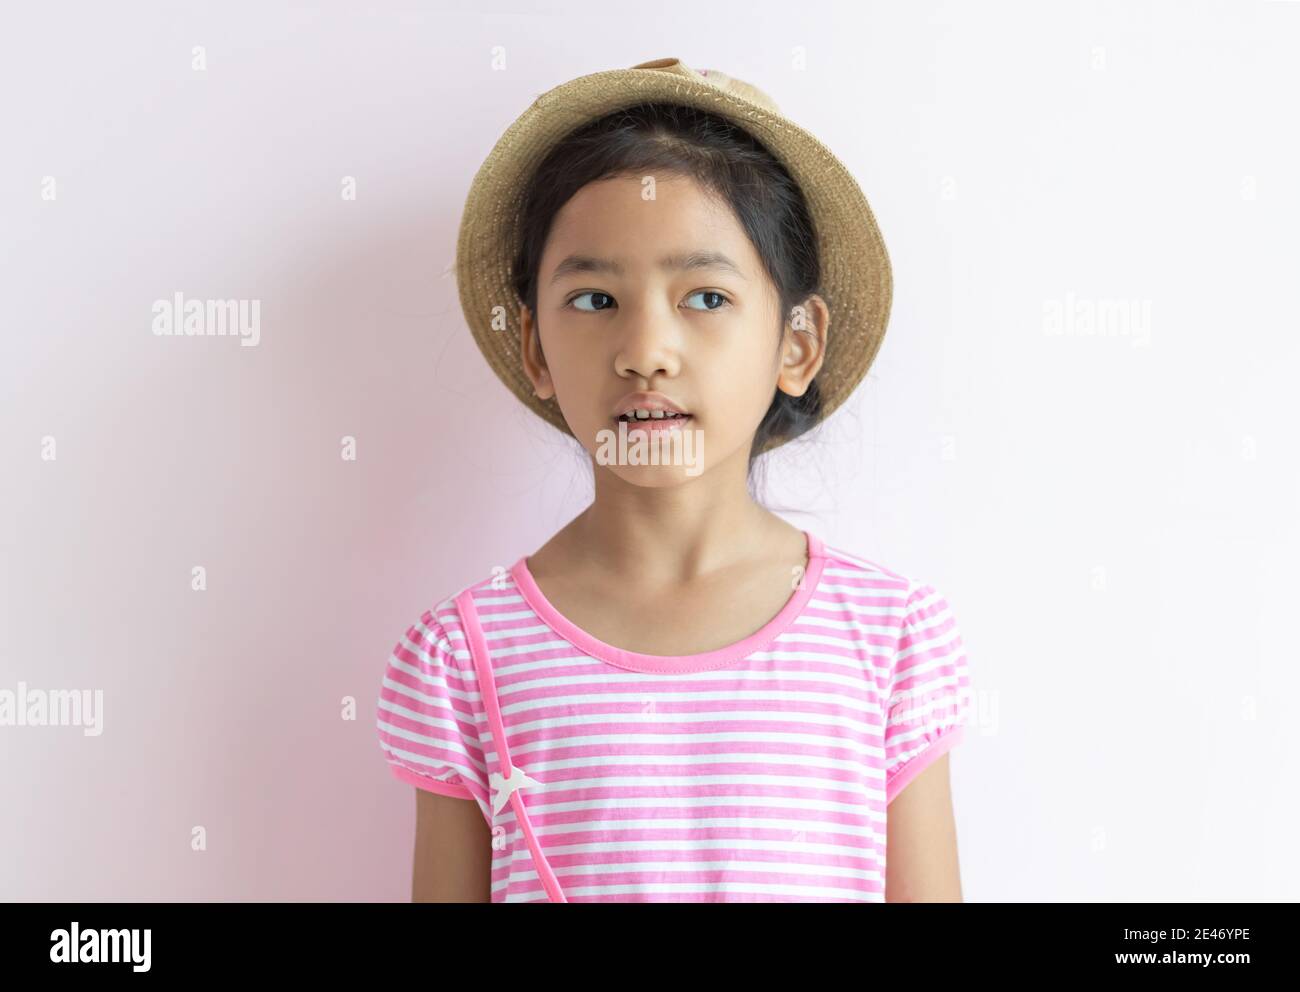 Ritratto di un bambino asiatico che indossa un abito a righe rosa e bianco. La ragazza indossava un cappello e guardava al suo fianco. Foto Stock